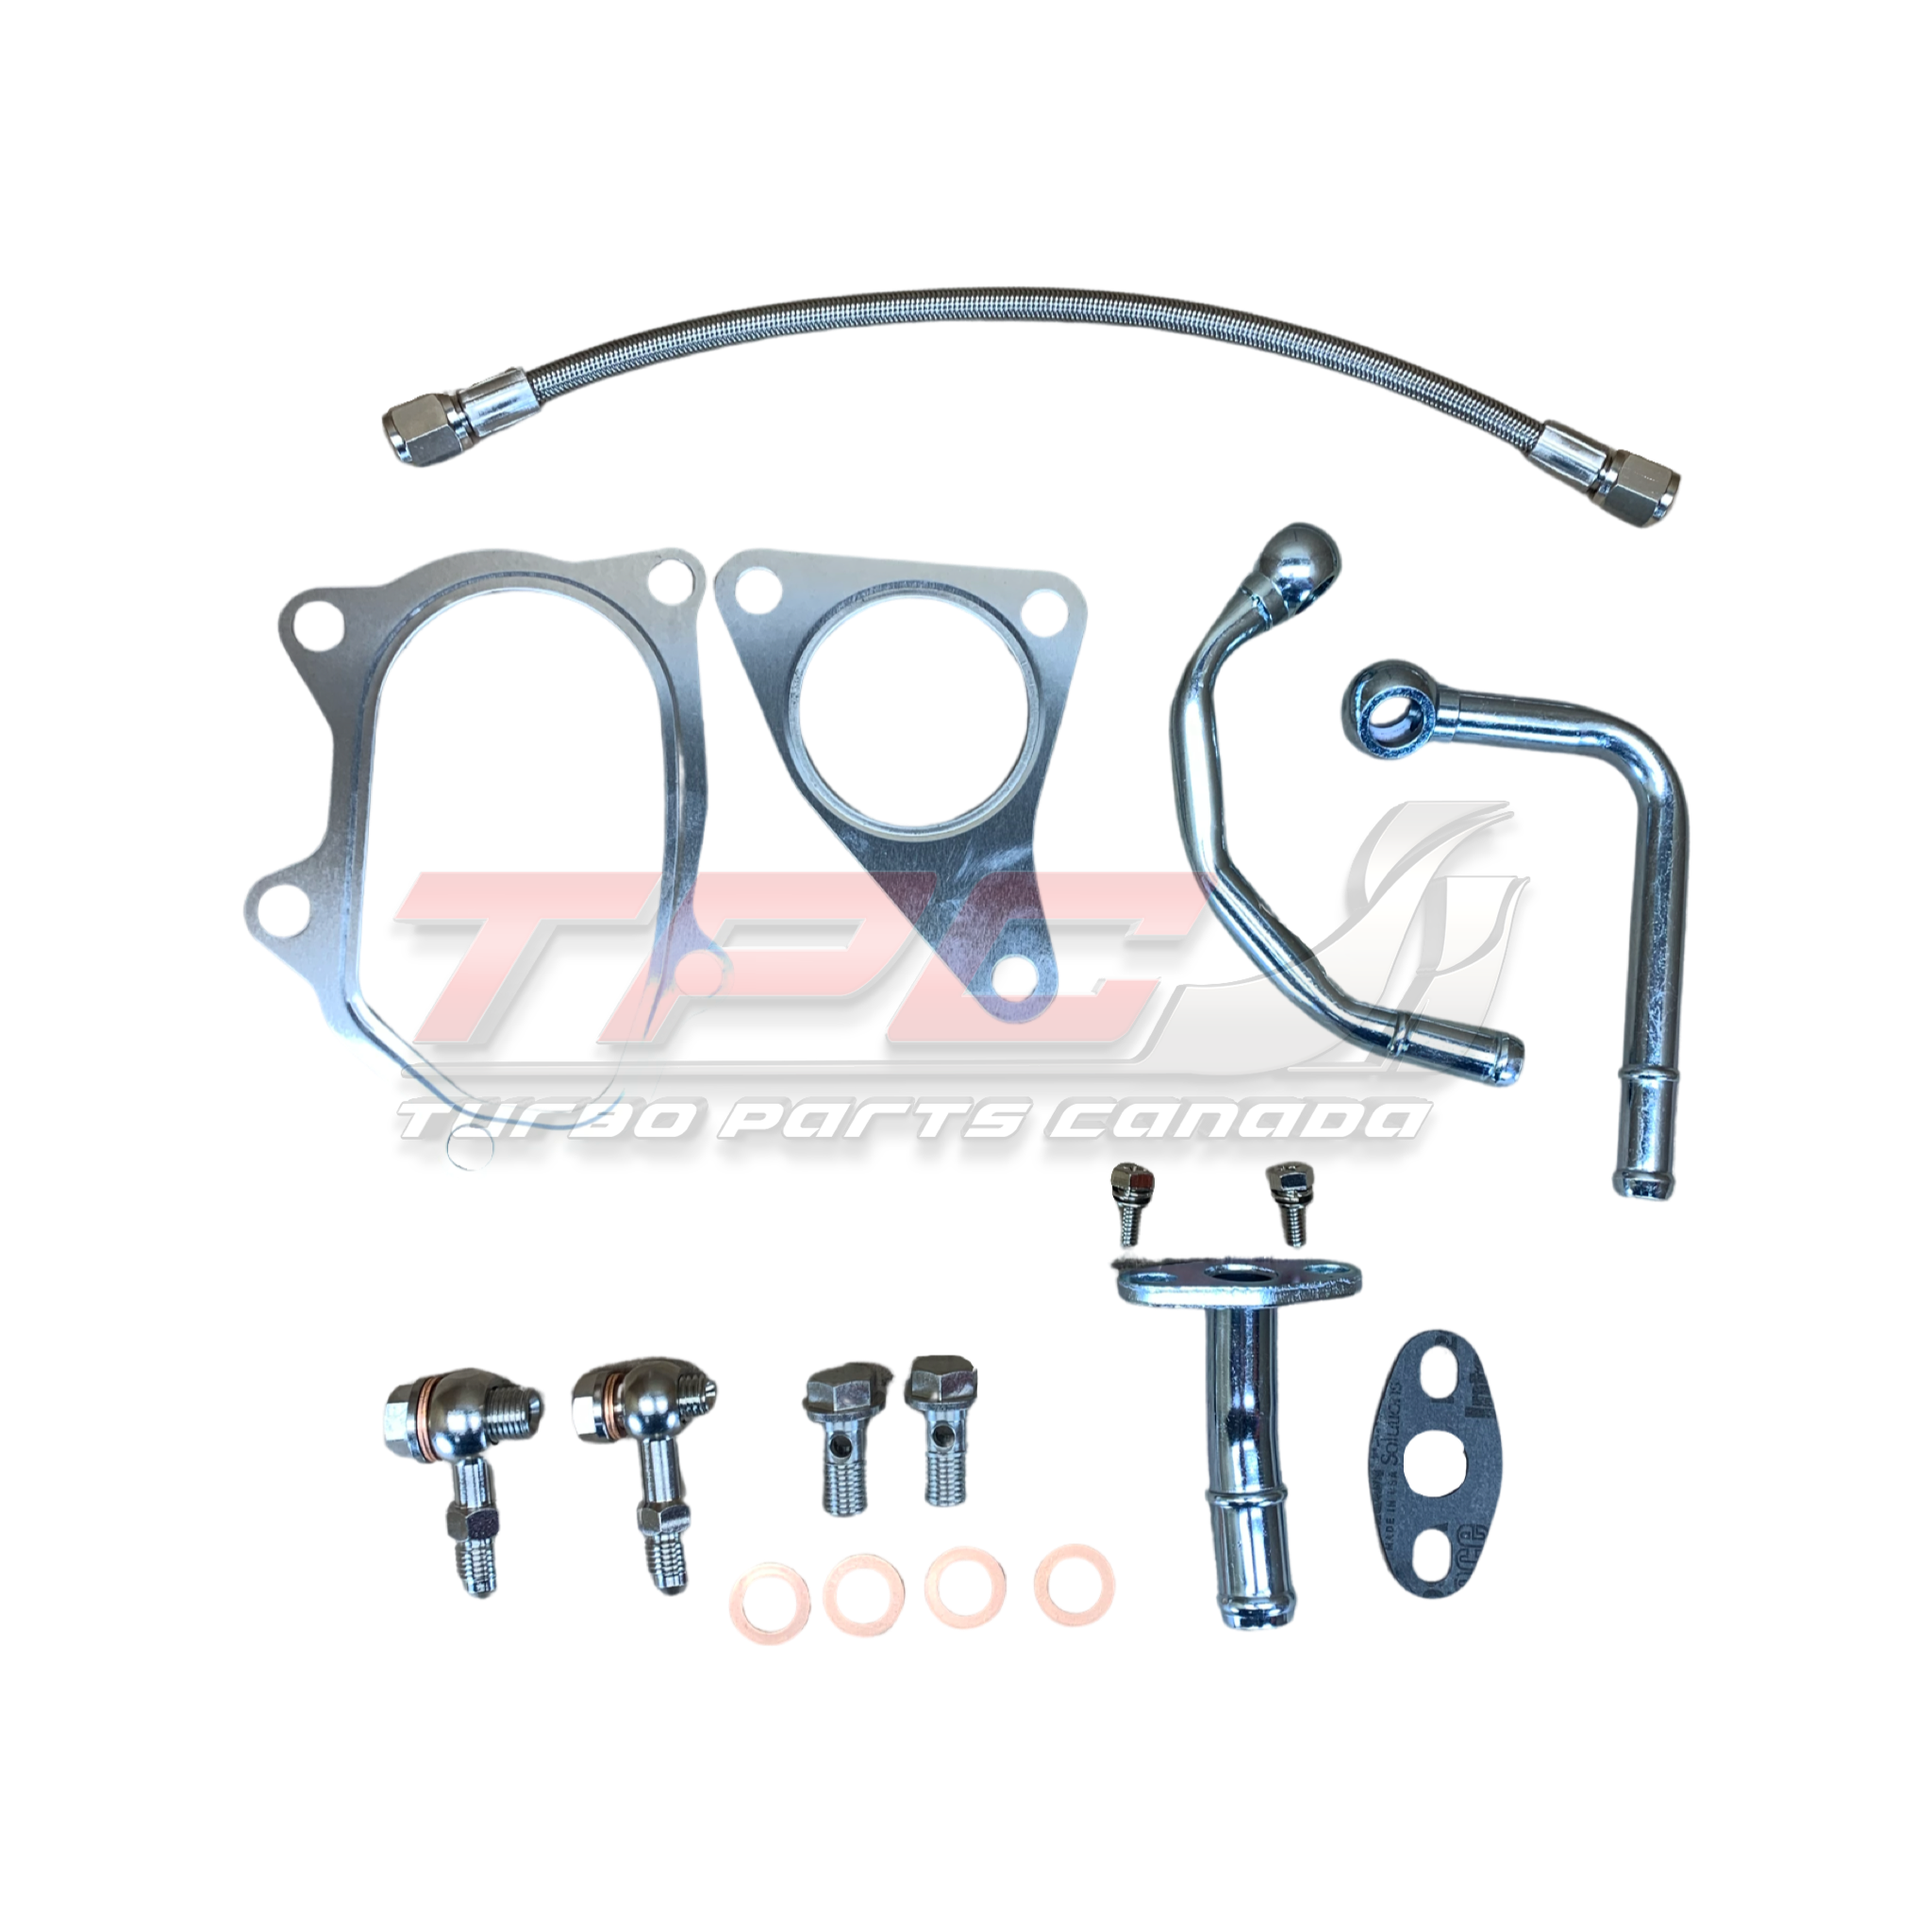 Subaru Install kits for VF turbochargers – Turbo Parts Canada Inc.